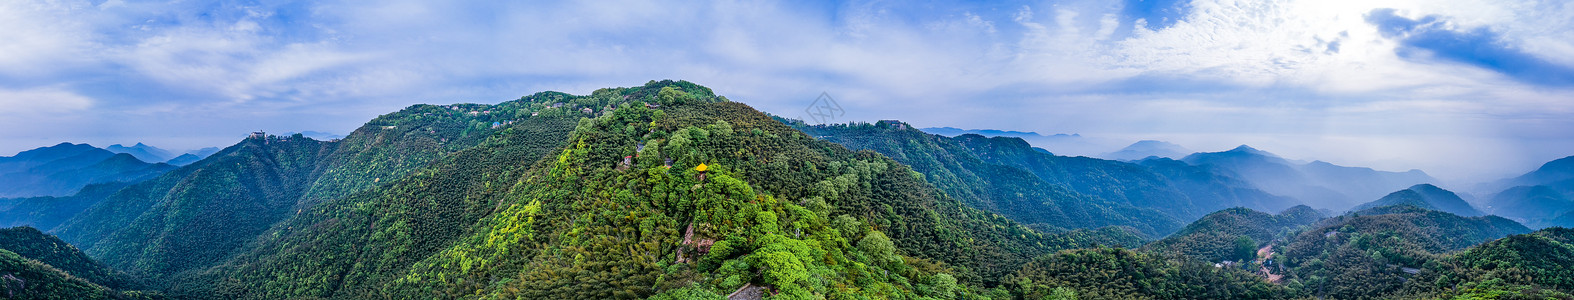 意境大图莫干山顶峰全景自然风景背景